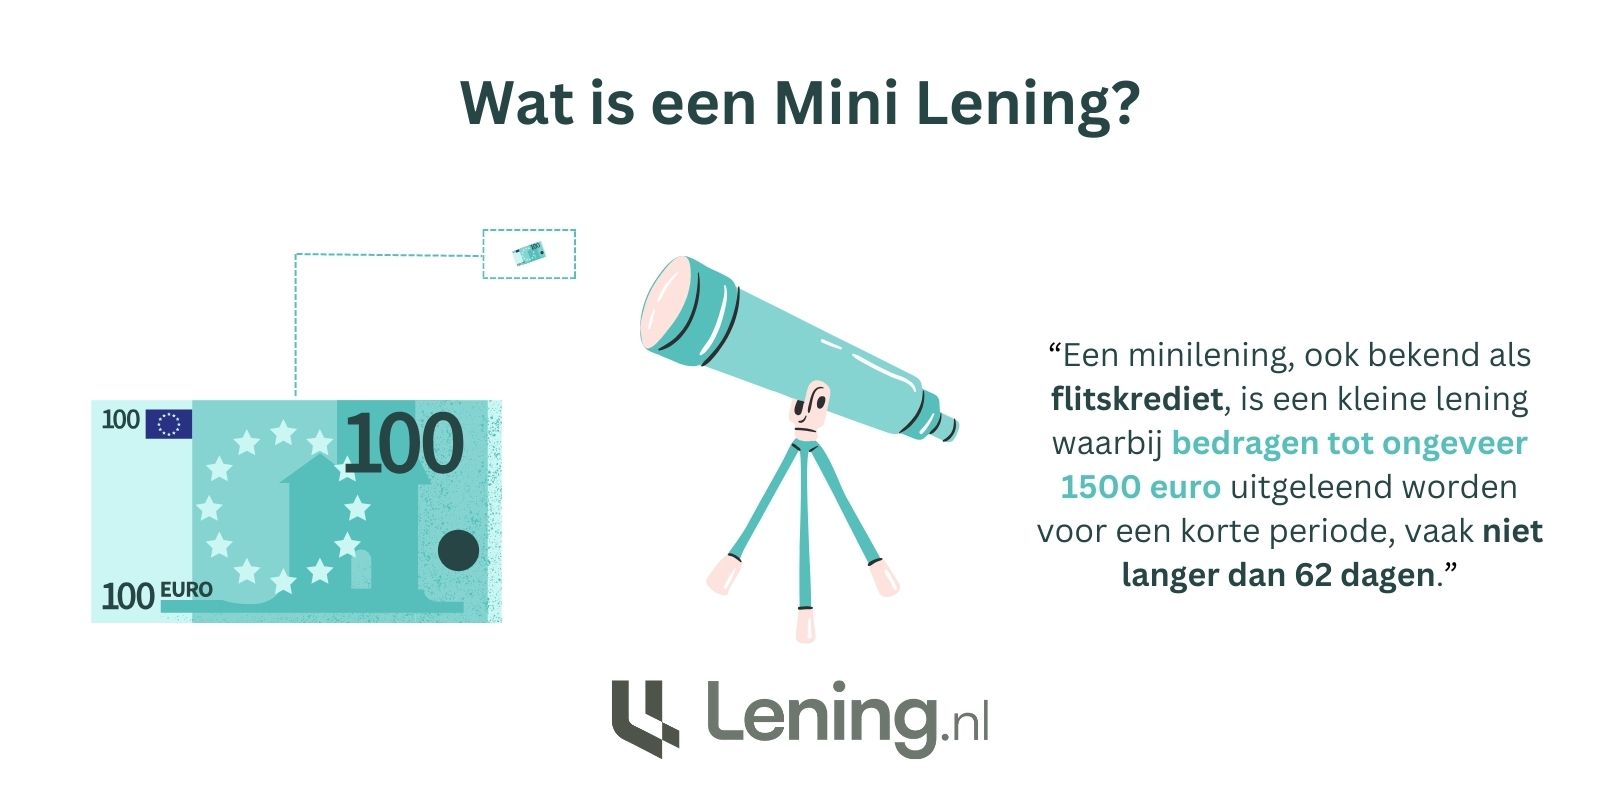 Wat is een mini lening?